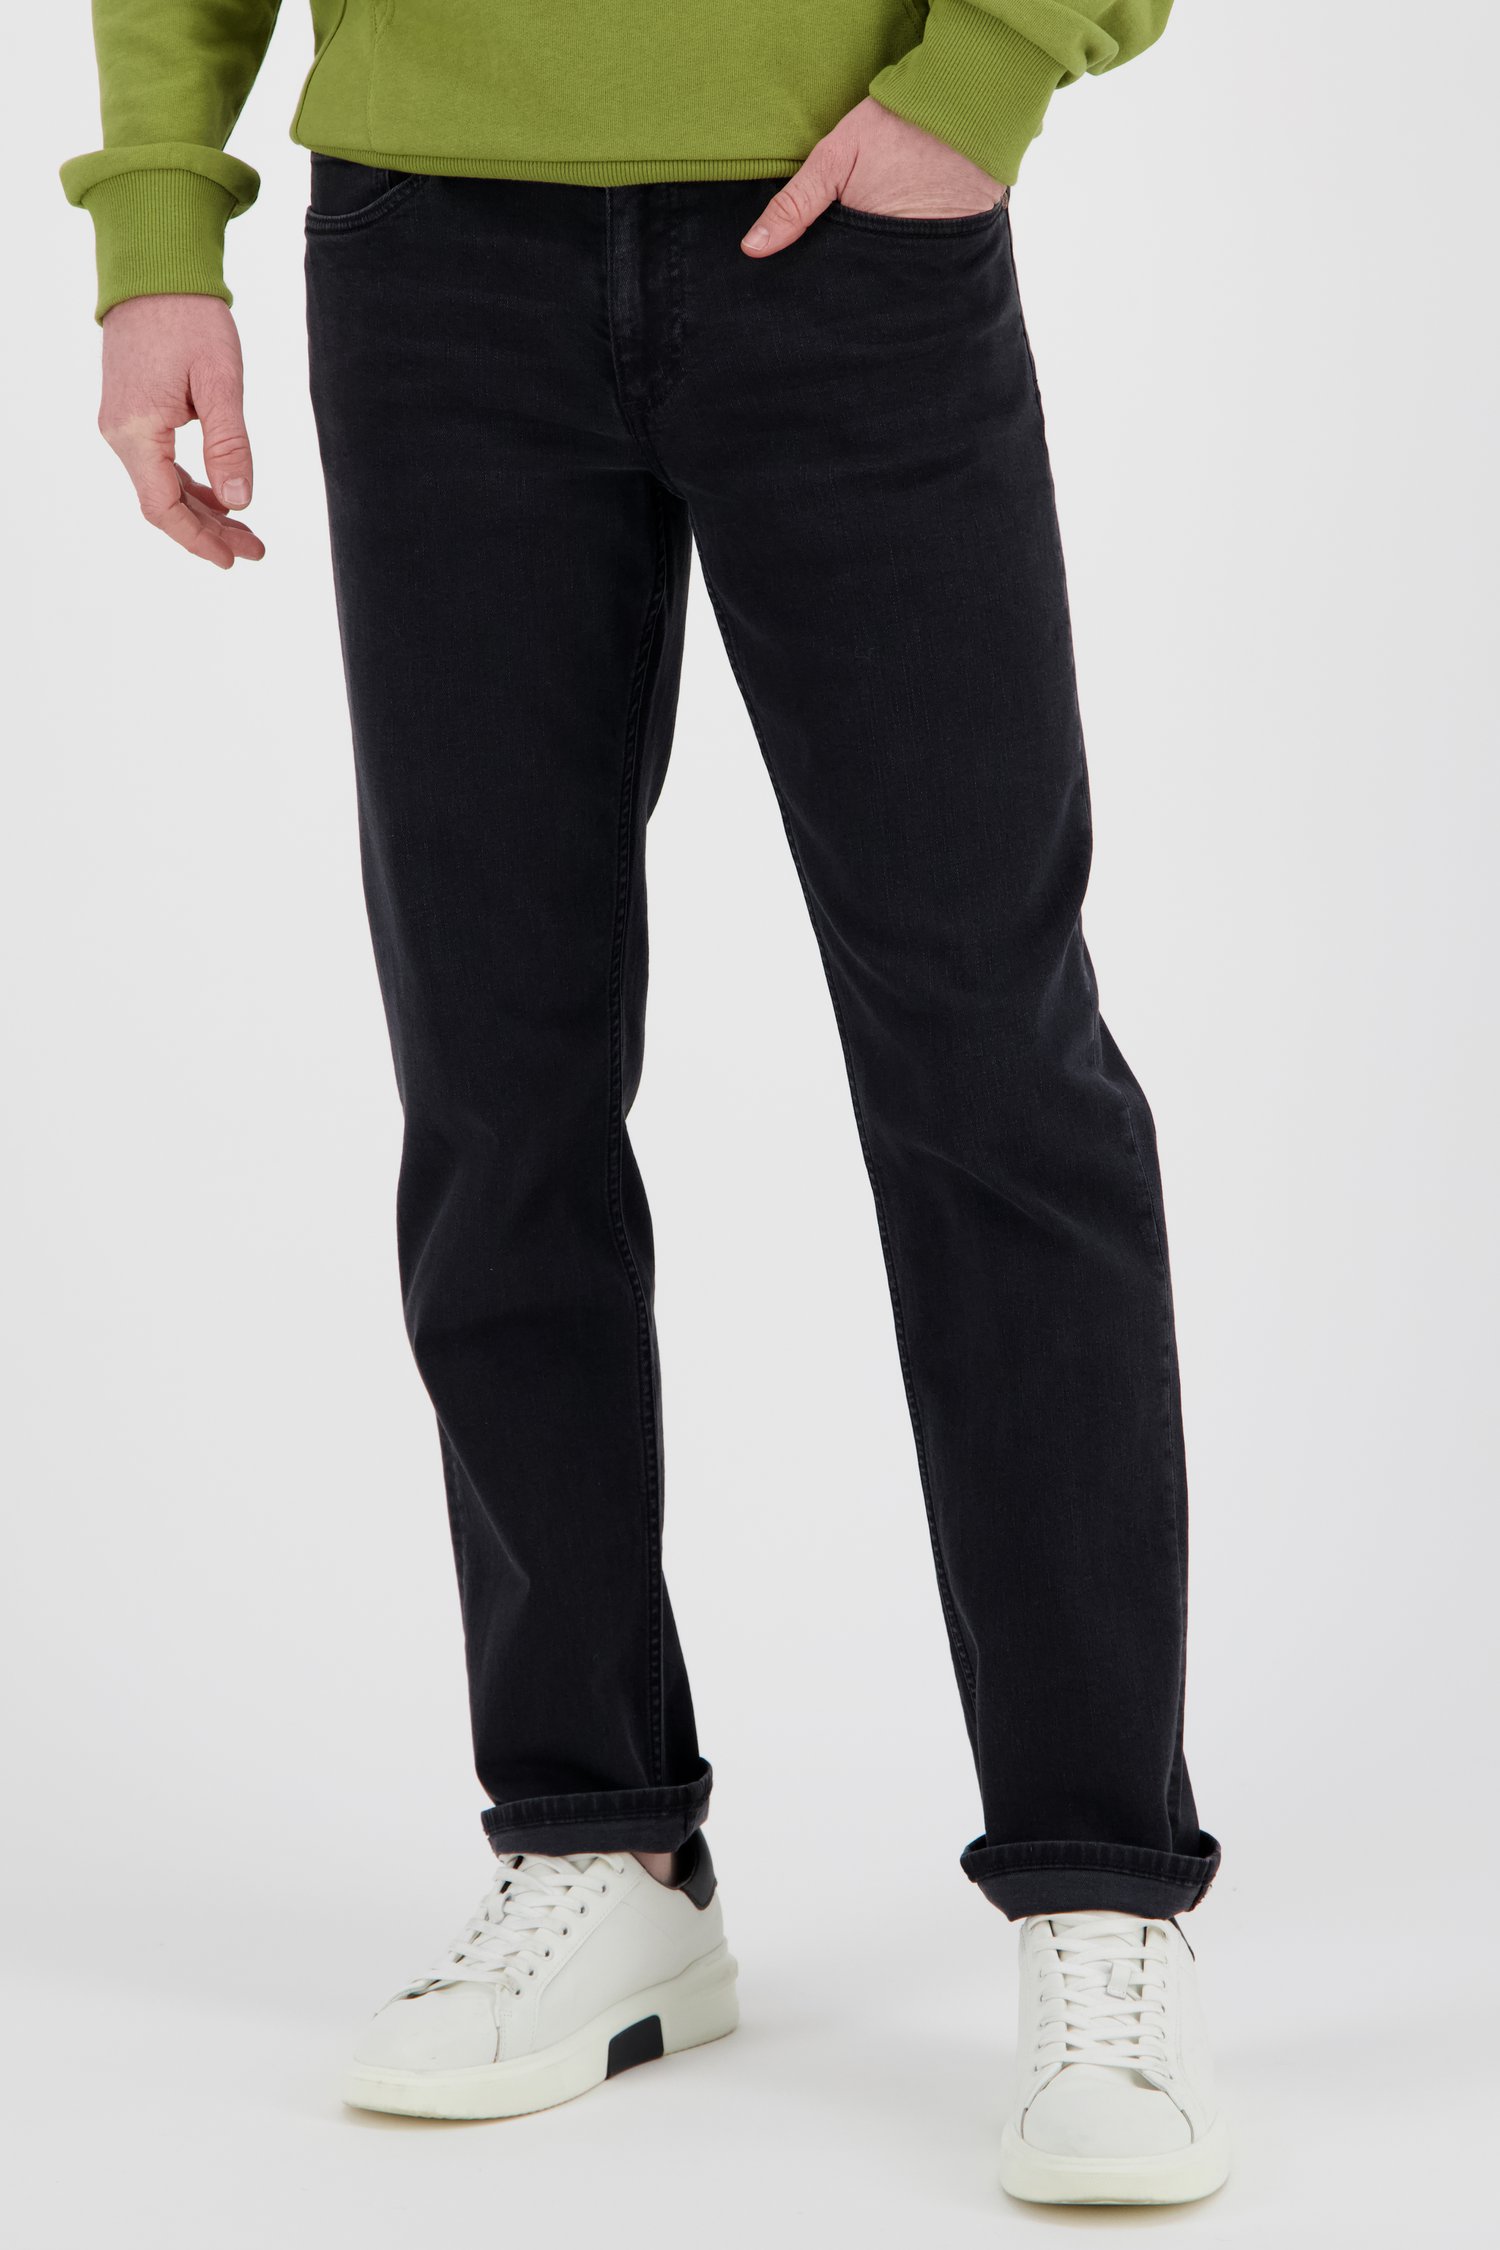 Jeans noir - Tom - regular fit - L32 de Liberty Island Denim pour Hommes